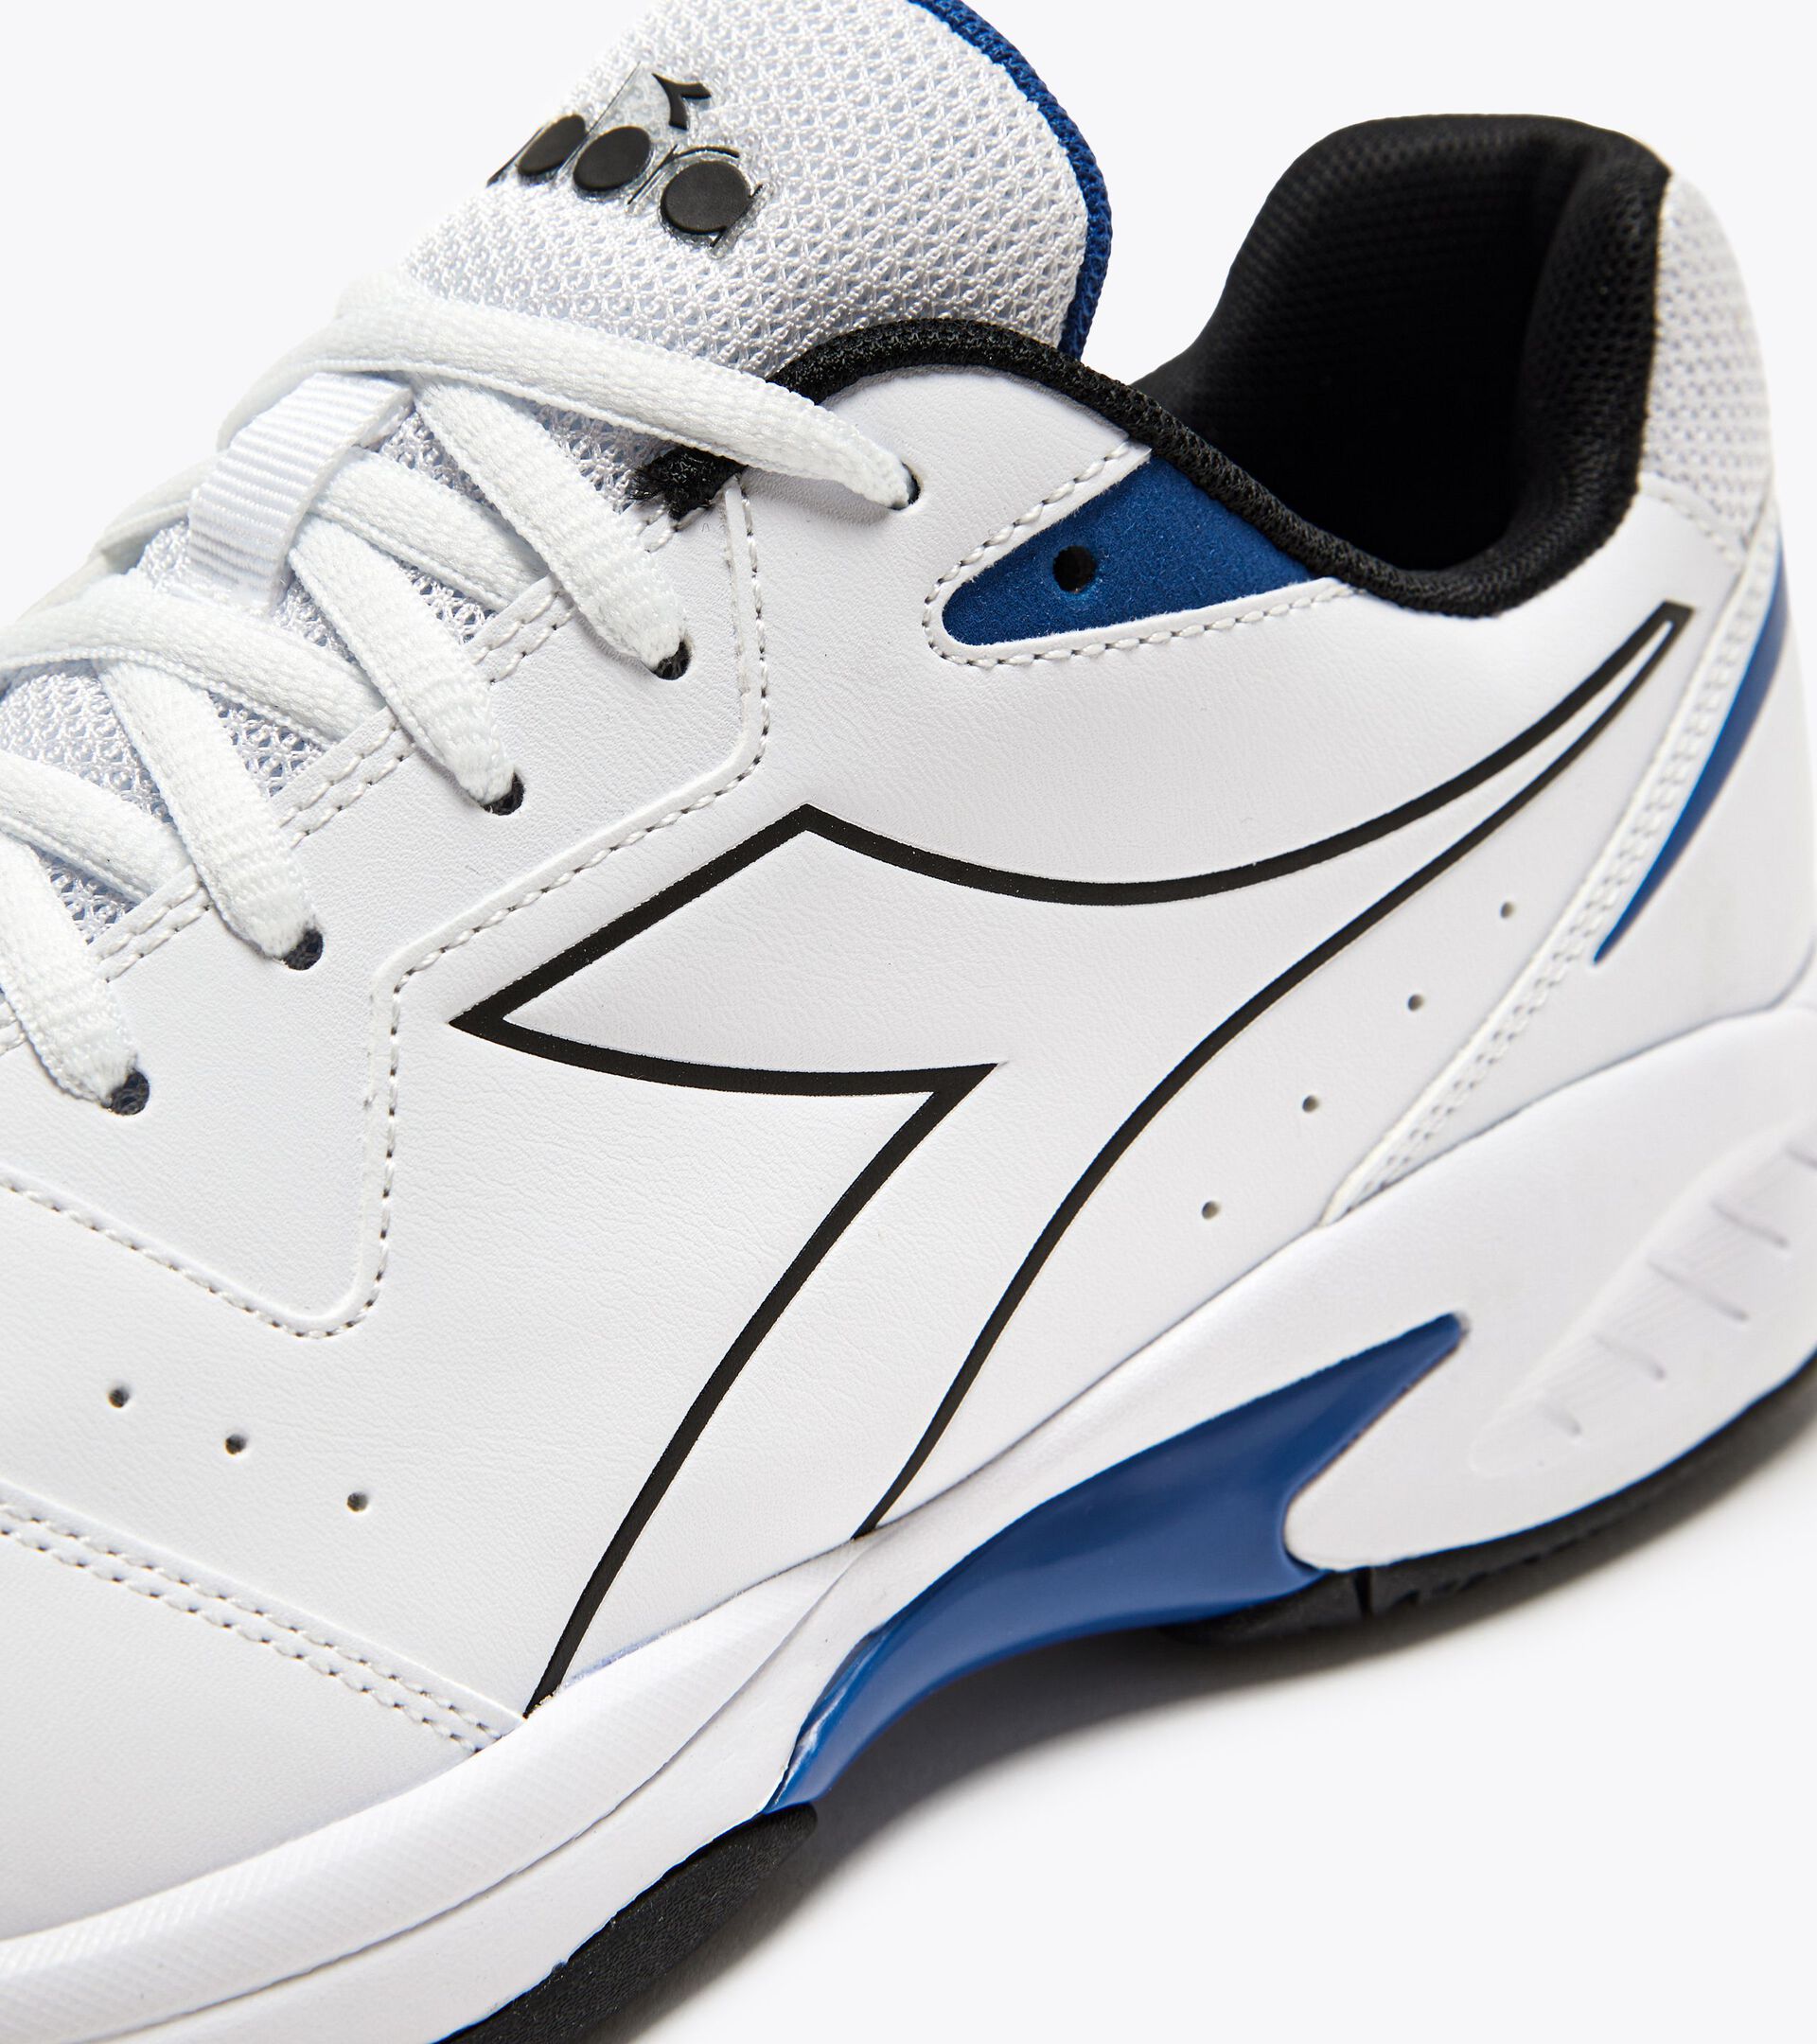 VOLEE 6 Tennis shoes - Men - Diadora Online Store CA